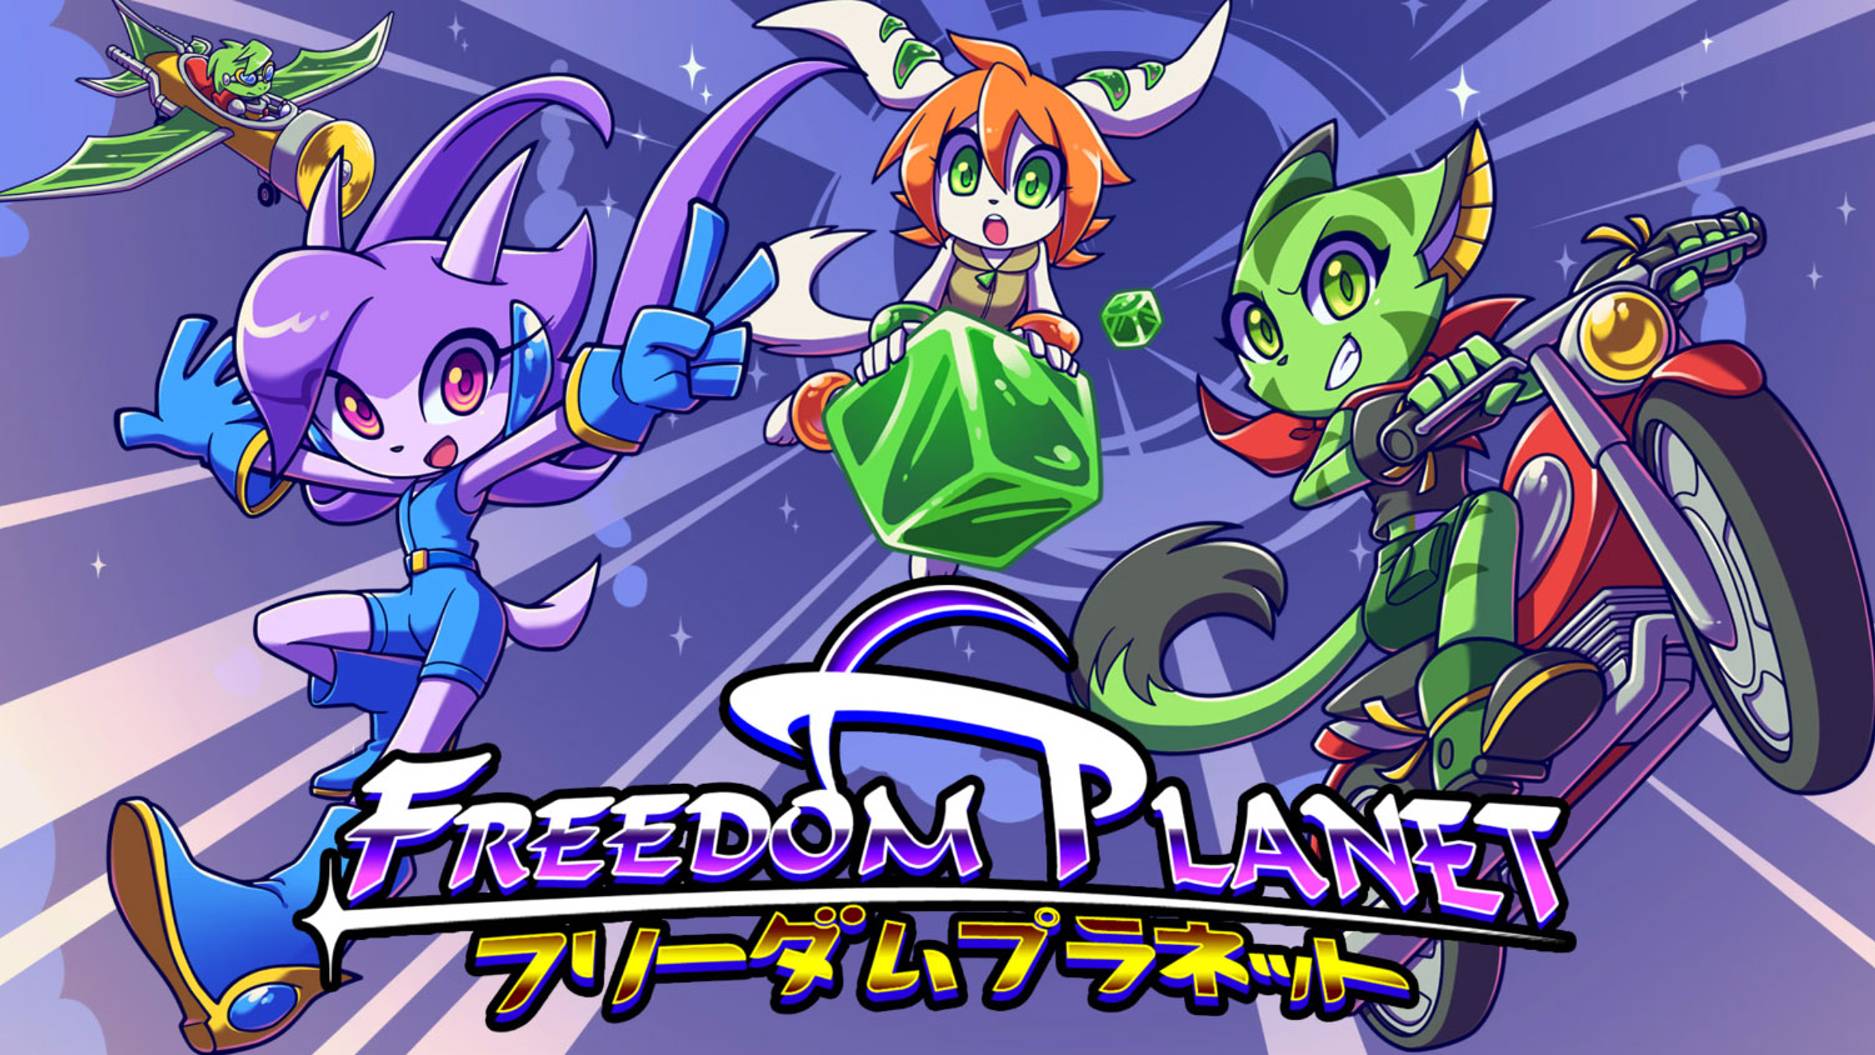 Игра Freedom Planet (трейлер)